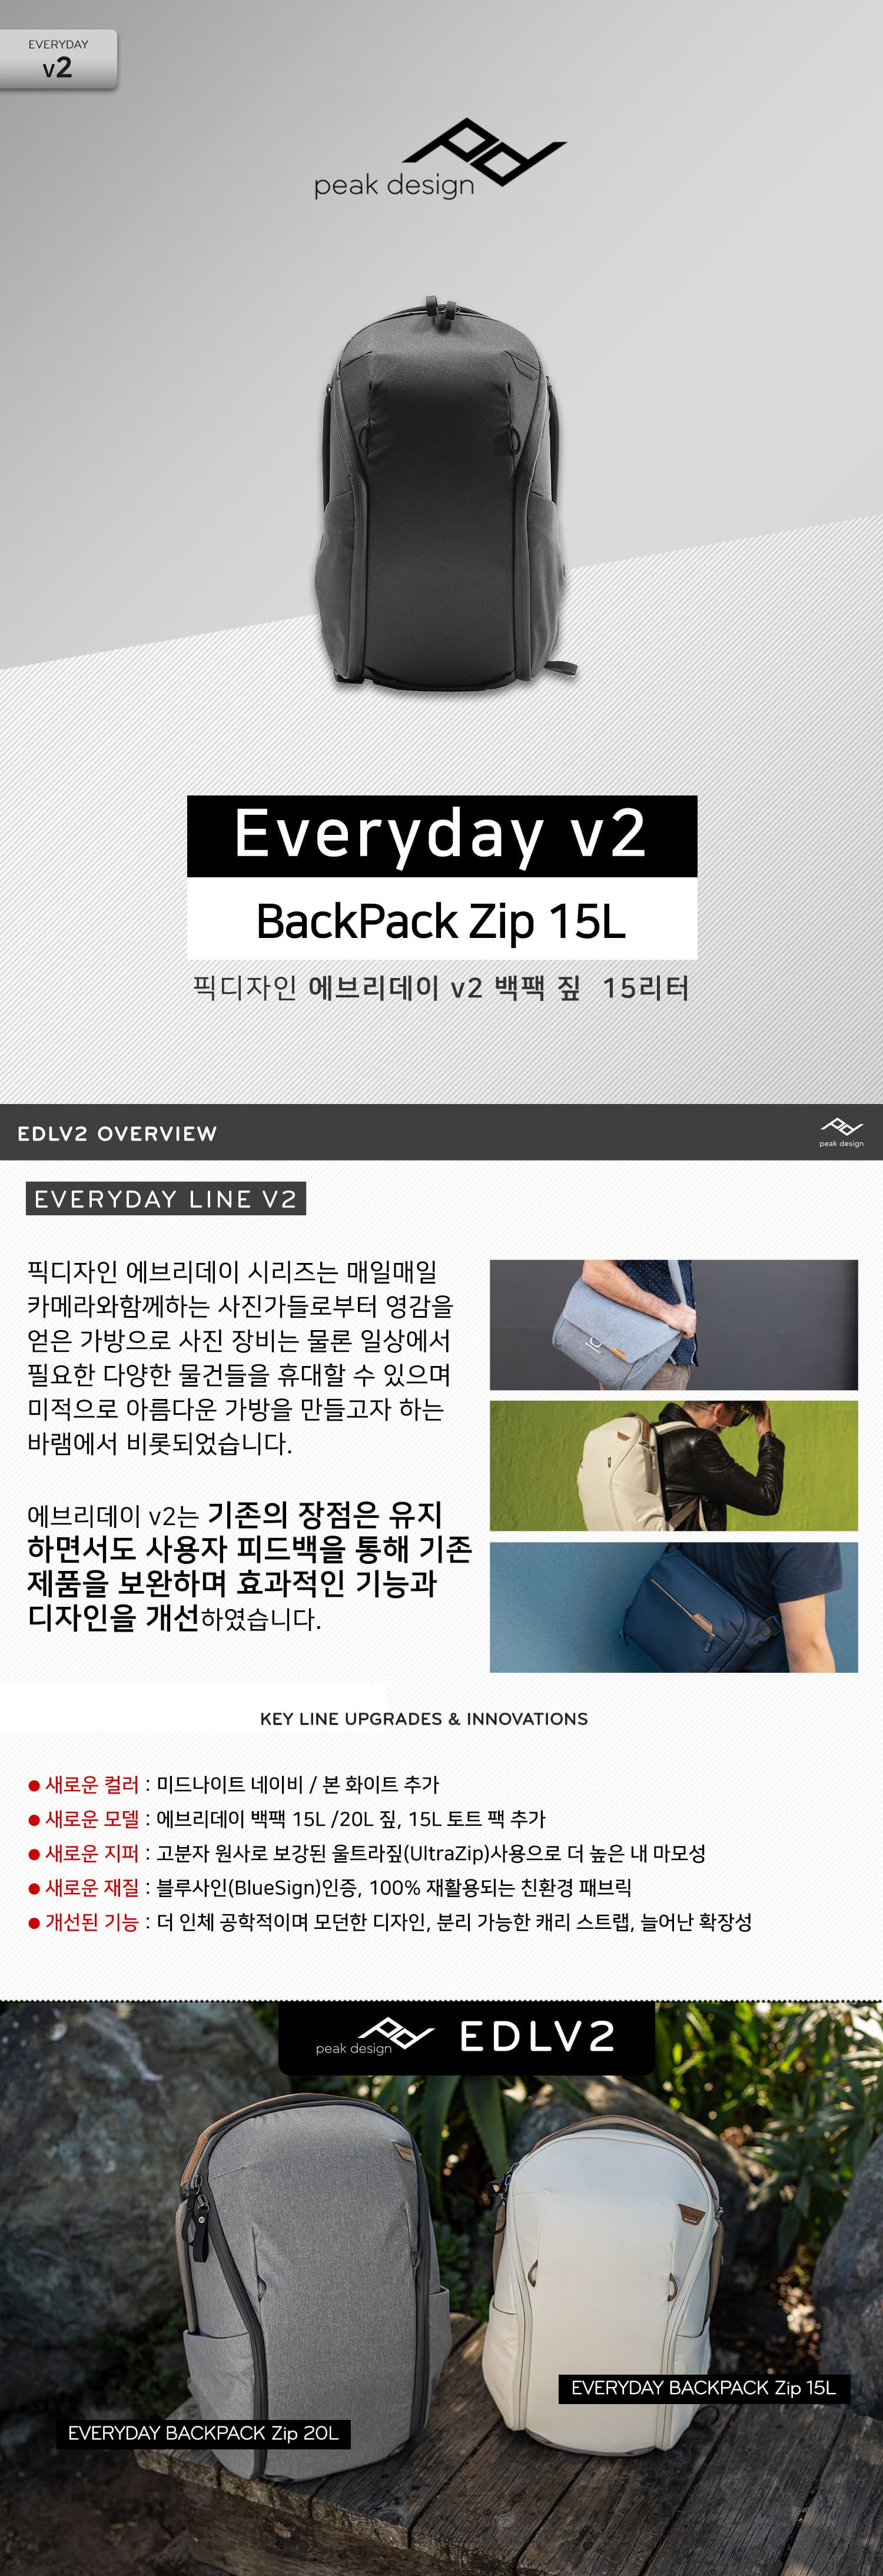 peak design Everyday v2 Backpack Zip 15L Black   긮 v2  ¤ 15L 